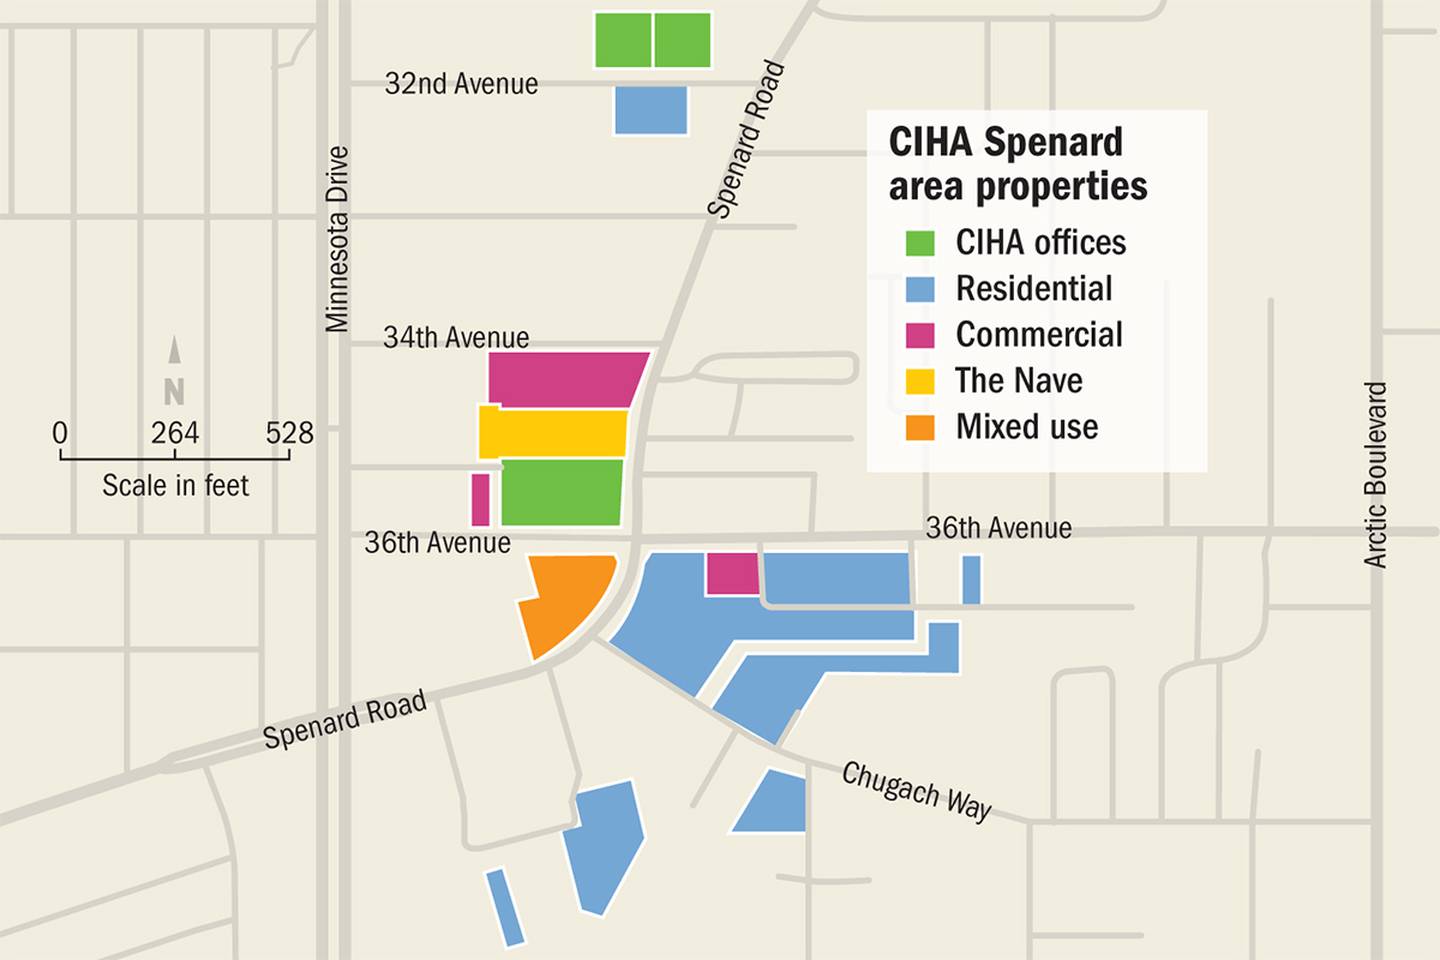 CIHA Spenard area properties